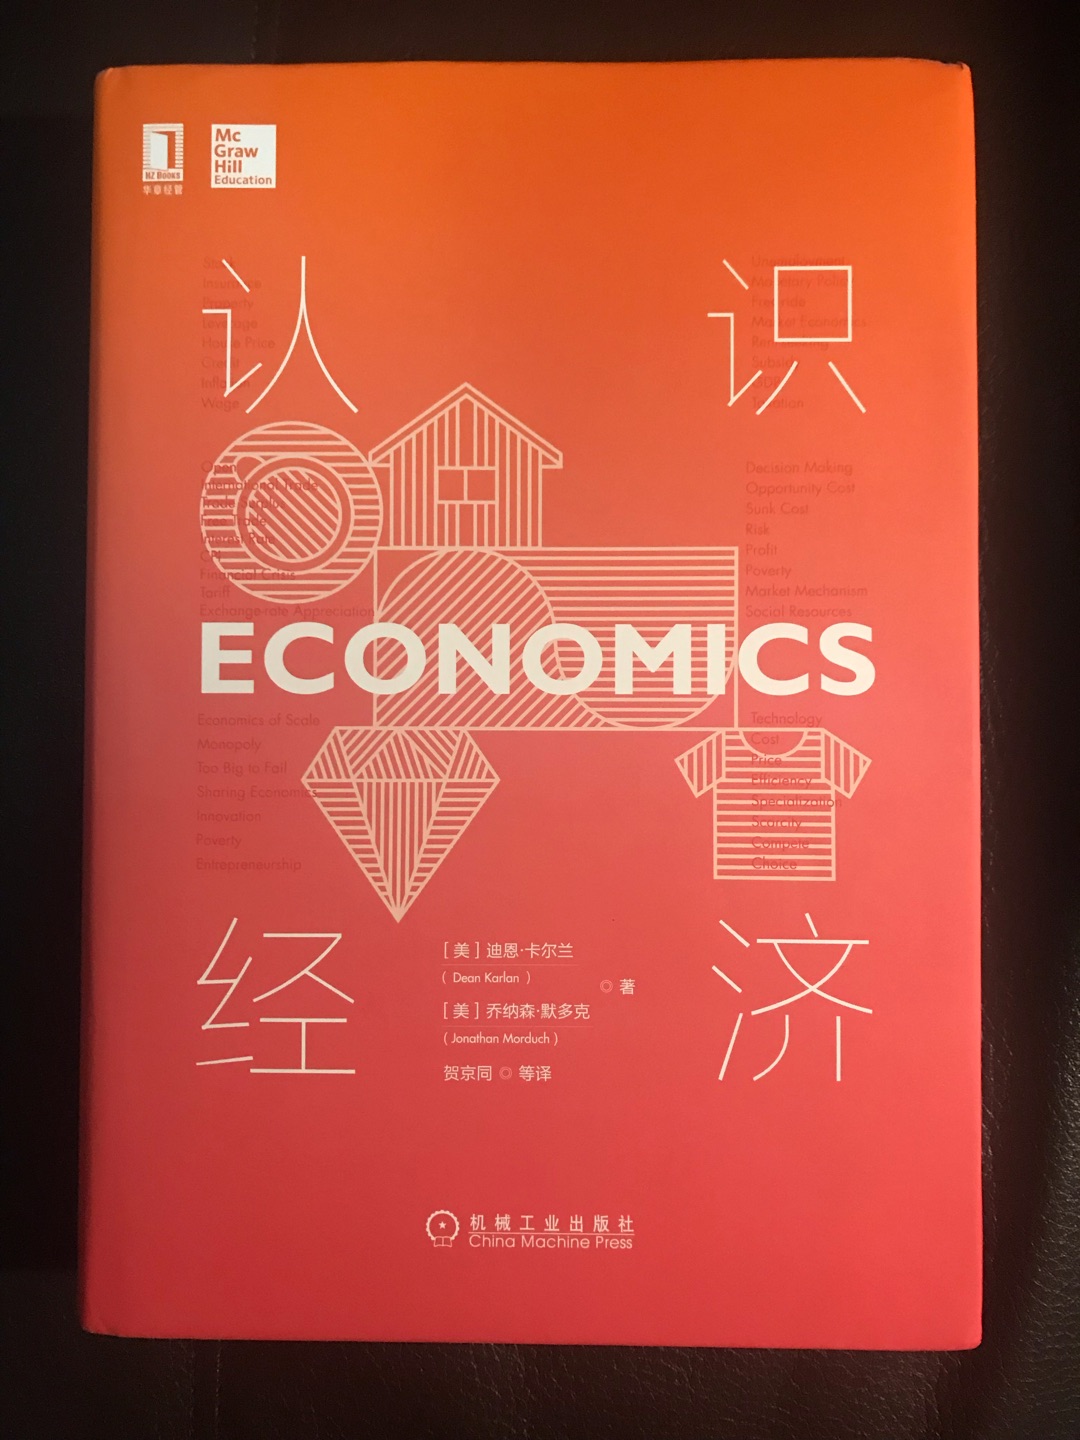 最近特别想了解一下经济学，正好这本书出版了，感觉还不错，还没来得及看，书比想象中小，感觉价格有点贵。